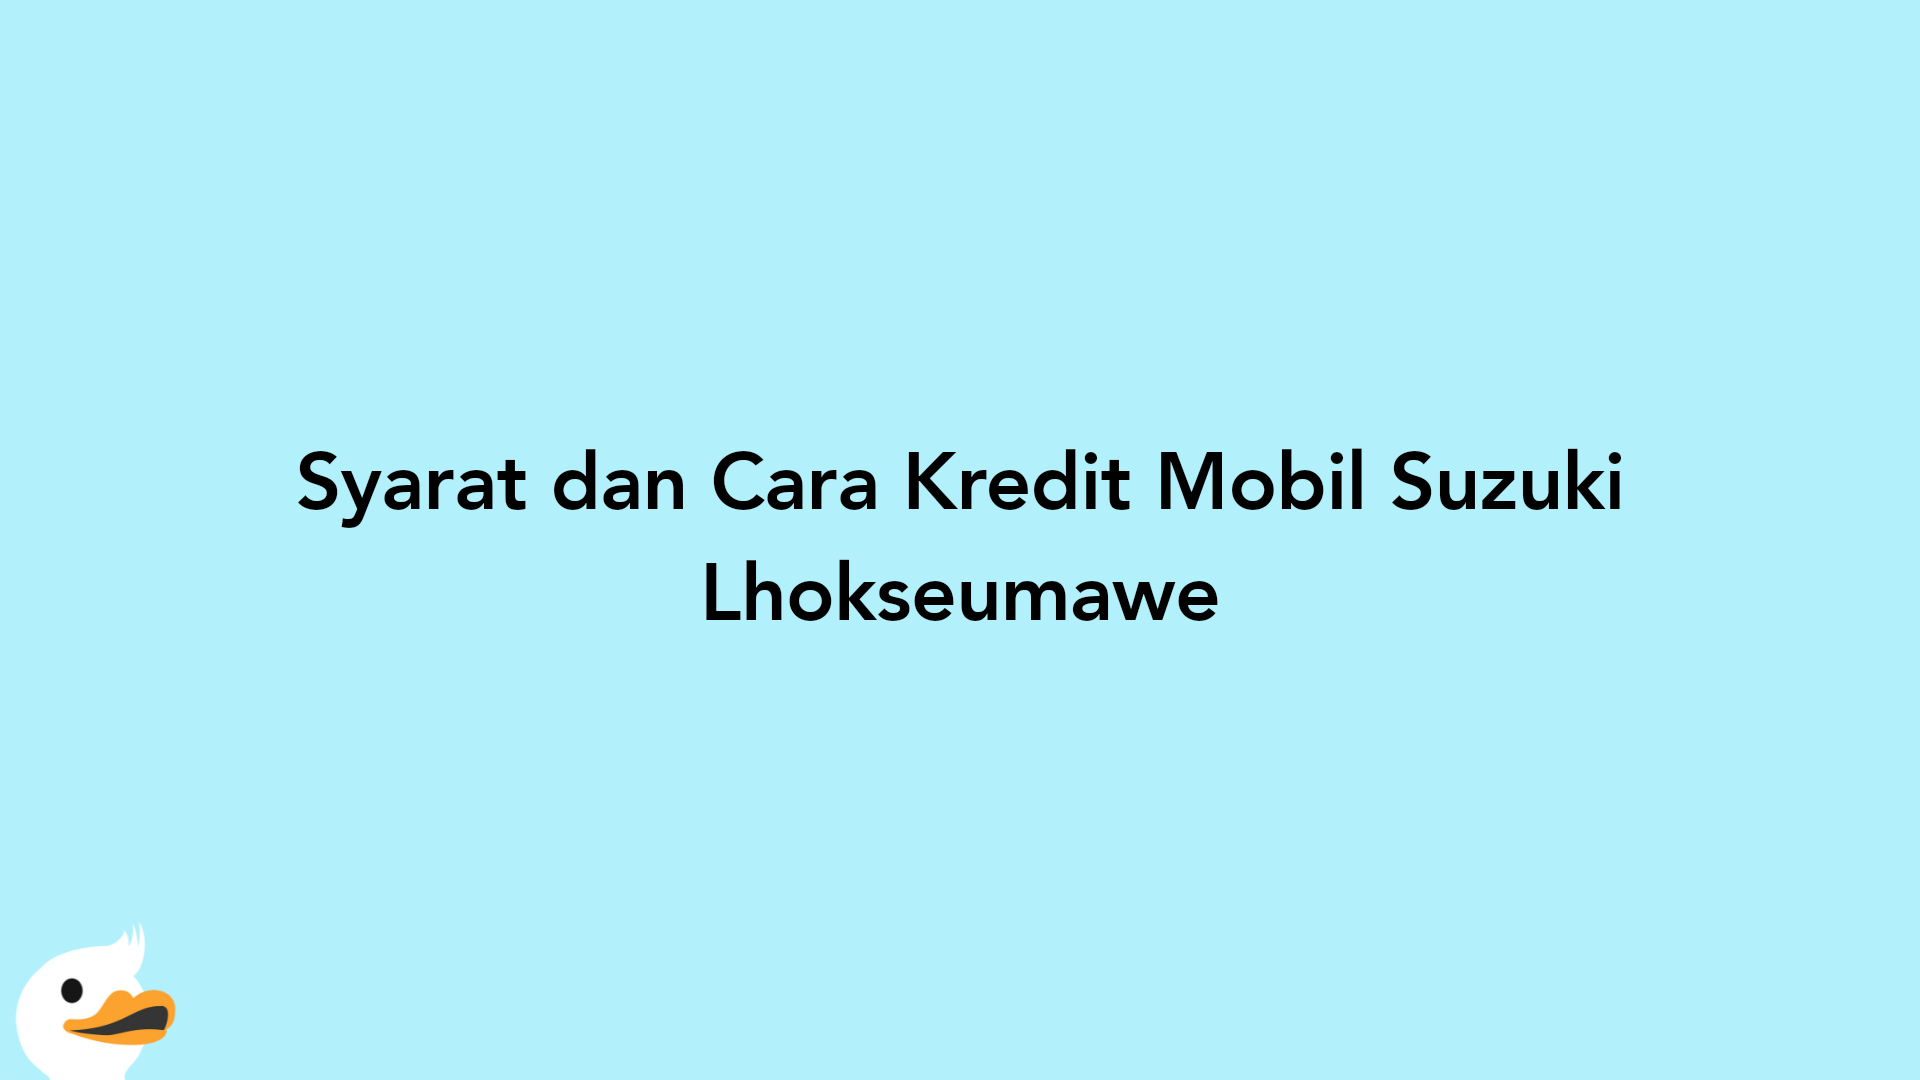 Syarat dan Cara Kredit Mobil Suzuki Lhokseumawe